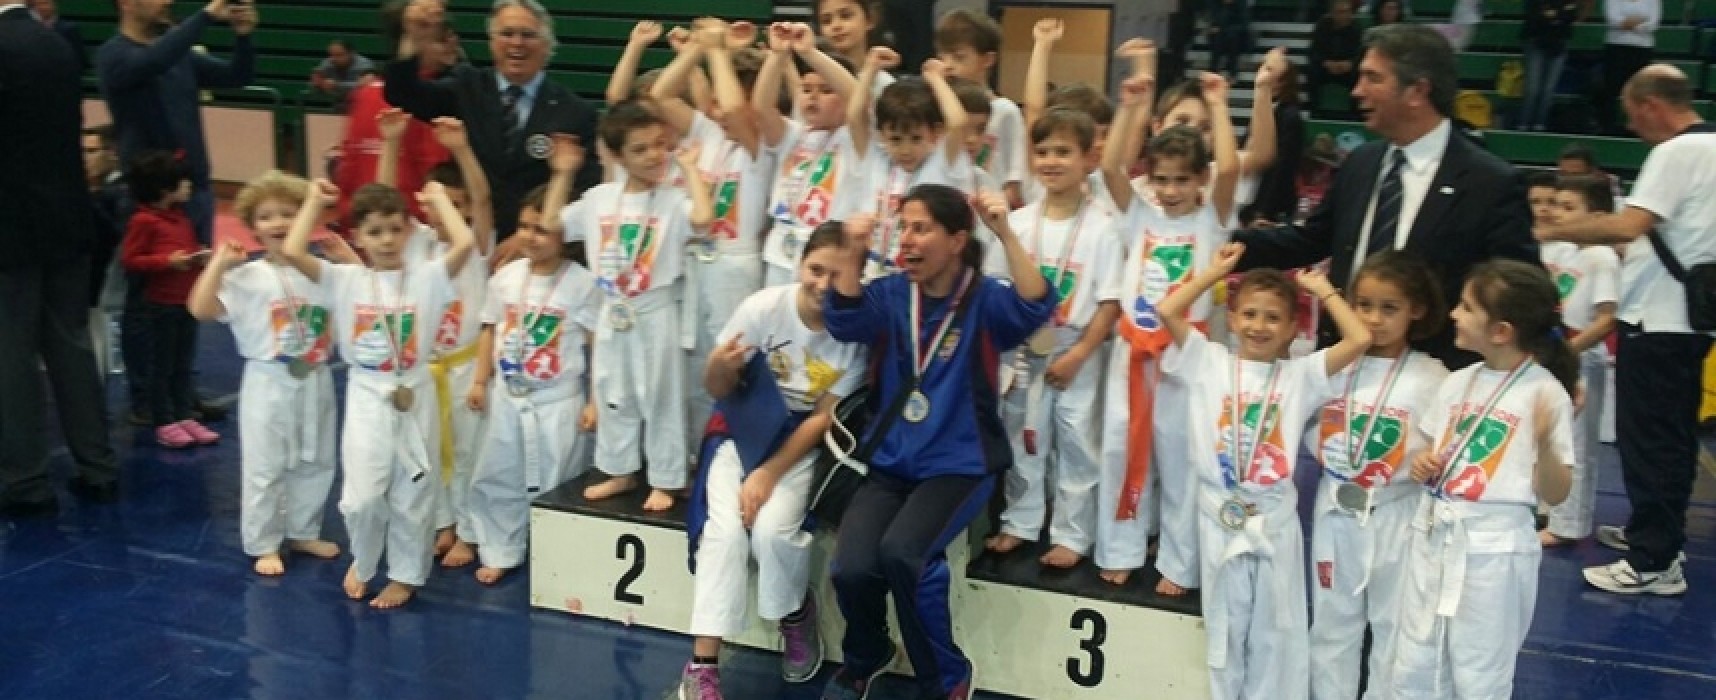 Il Gruppo Sportivo Fiamme Cremisi Bersaglieri presente al Campionato Italiano di Karate